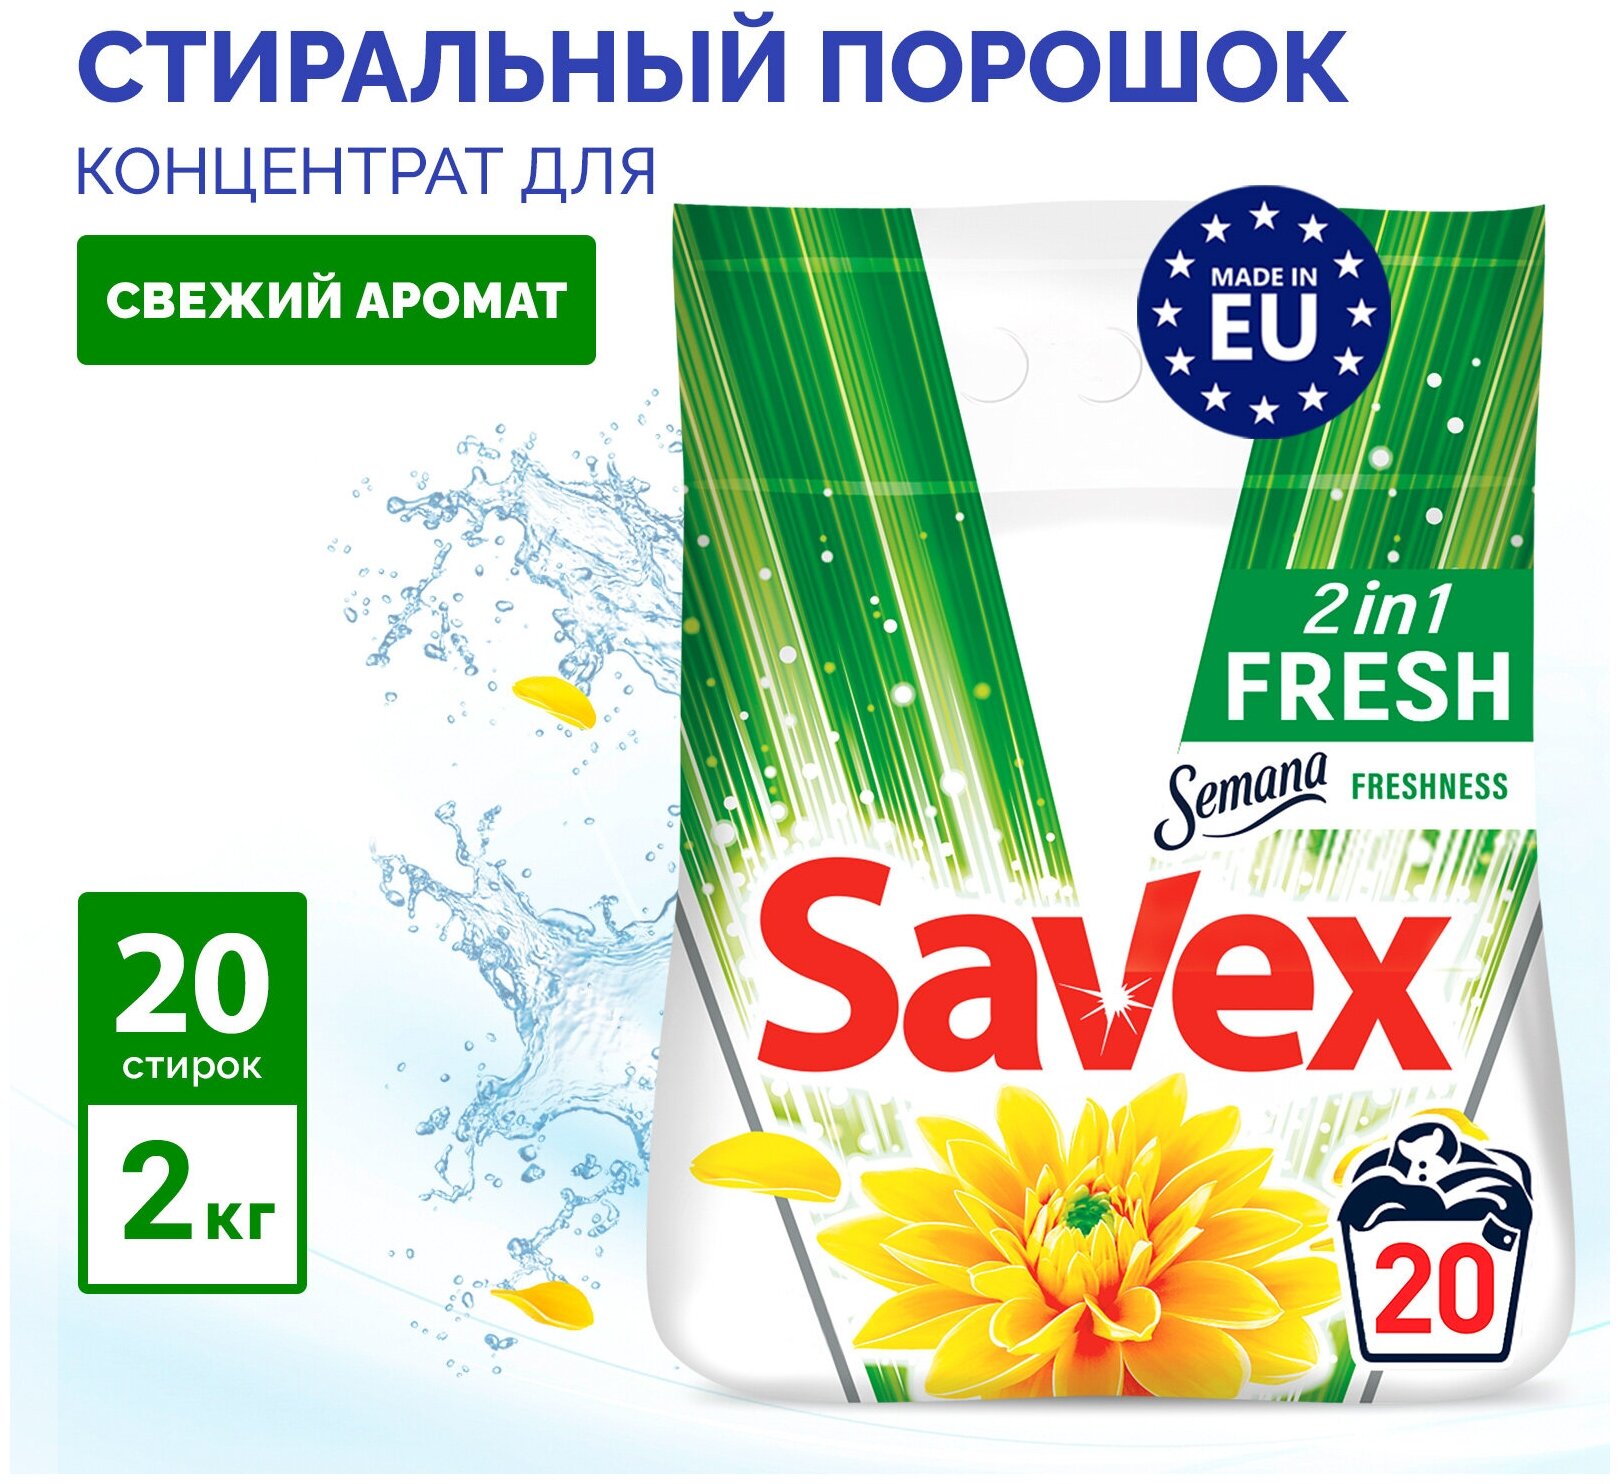 Порошок стиральный автомат Savex 2в1 Fresh для белья универсальный концентрат, 2 кг